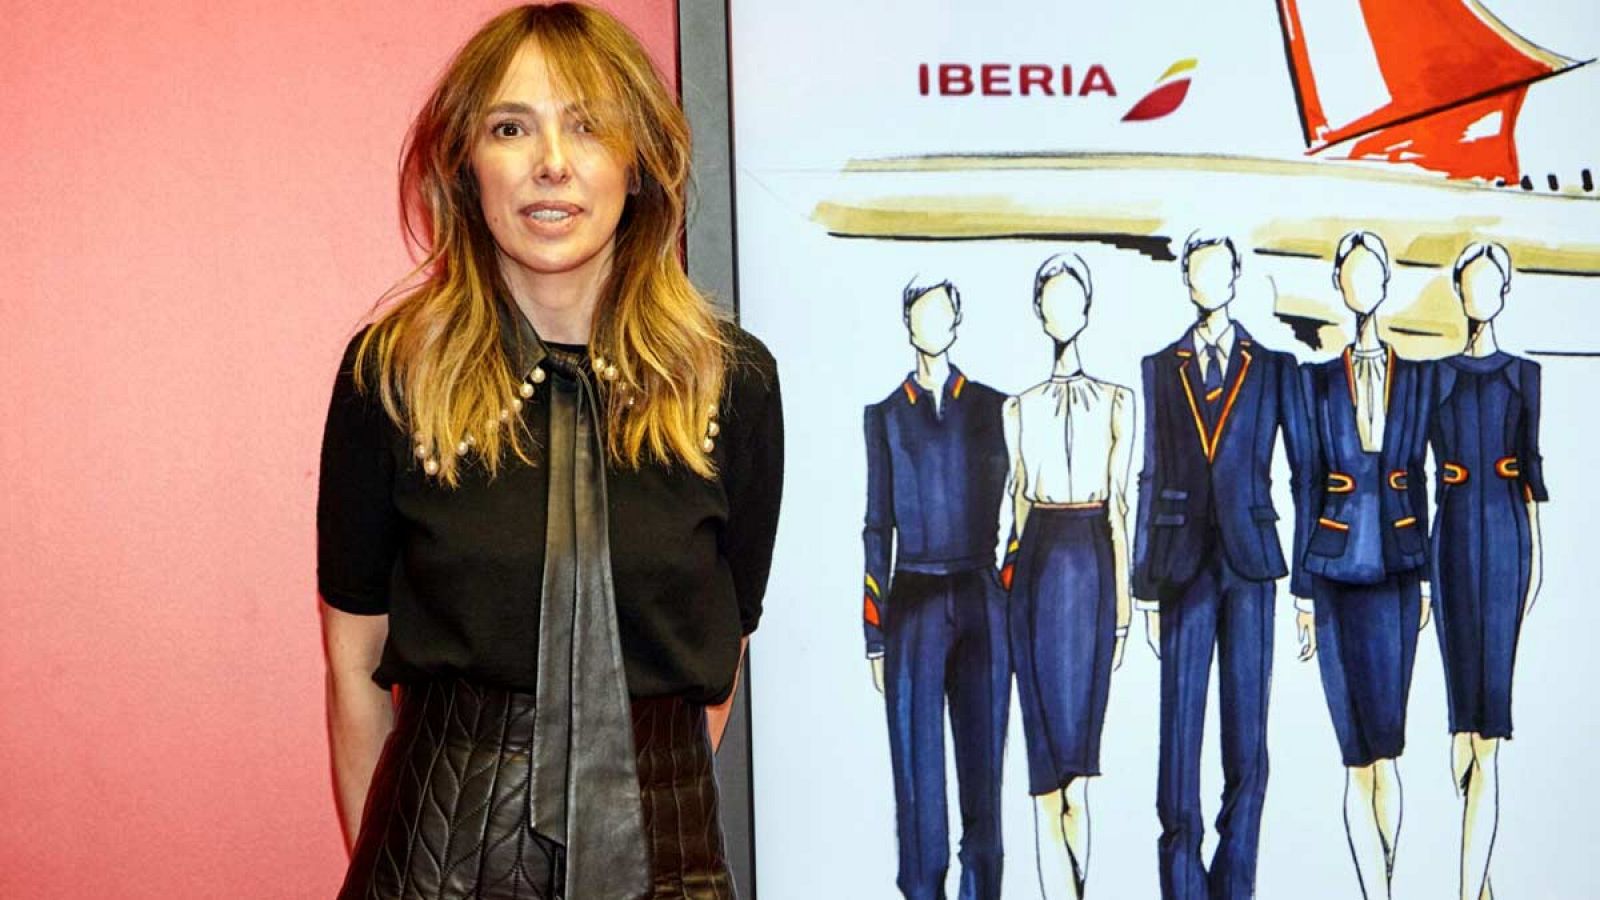 La diseñadora Teresa Helbig presenta los nuevos uniformes de Iberia.